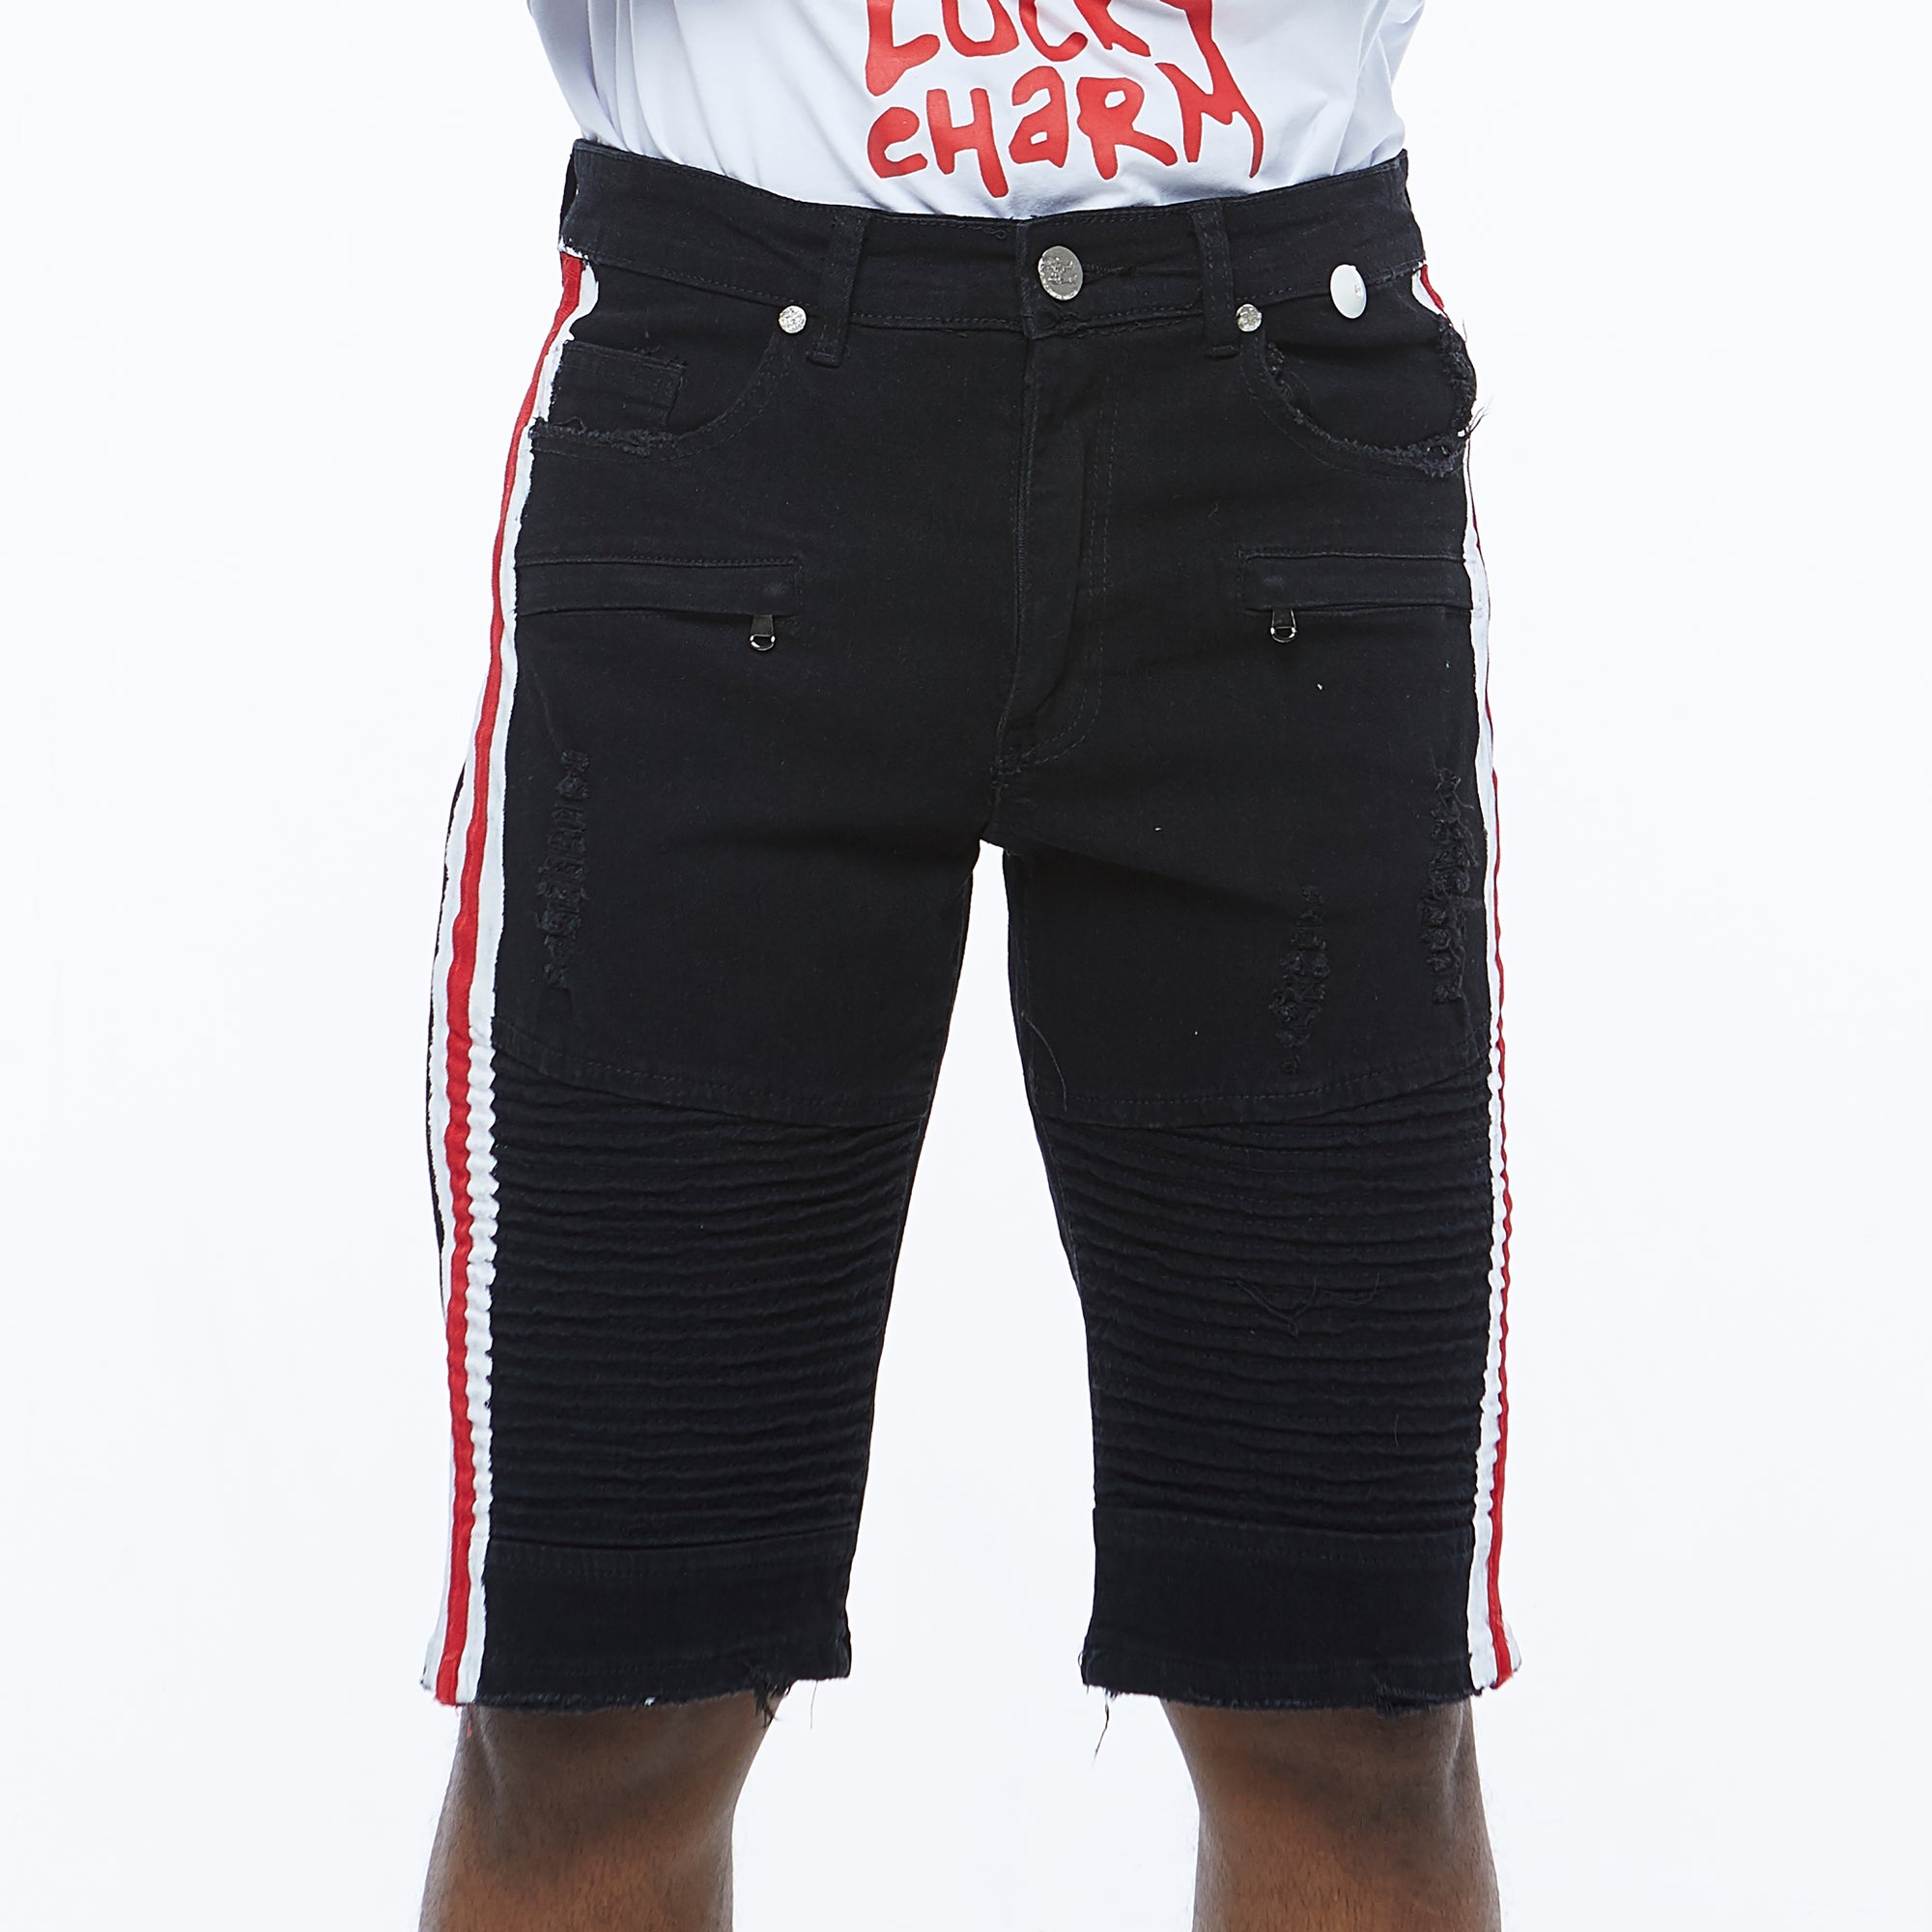 Premium Striped Moto Shorts (Black/White/Red)